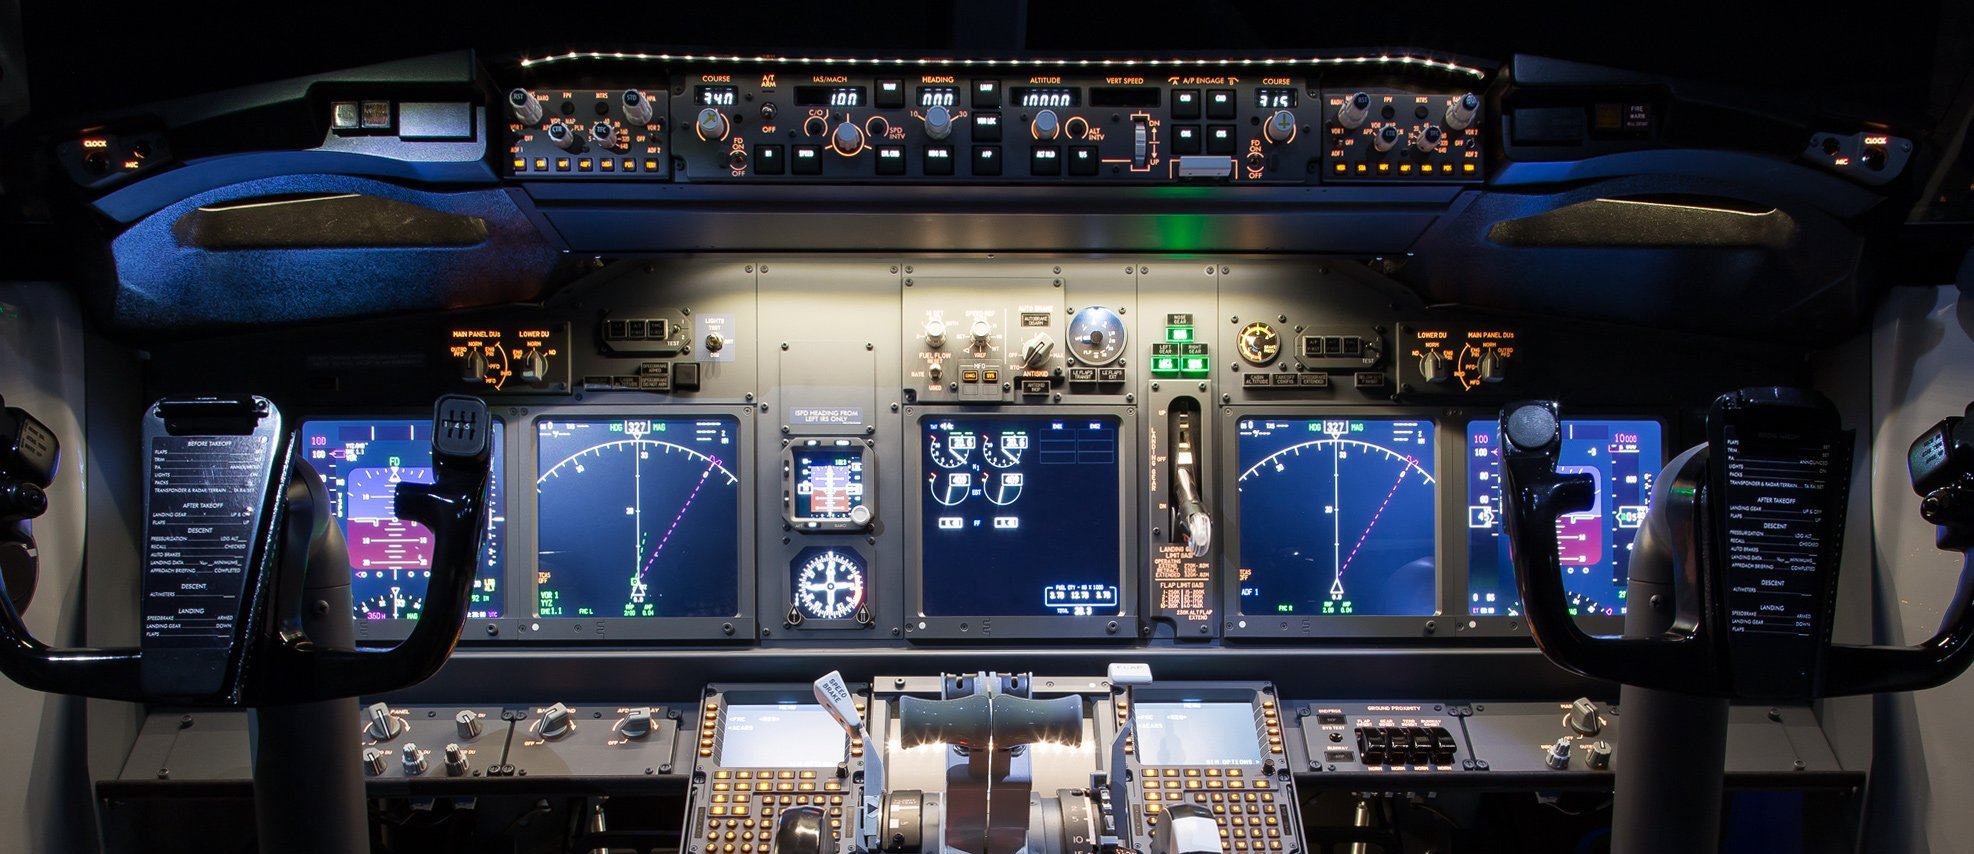 JetMax系列 飞行模拟器 方案书-5593 